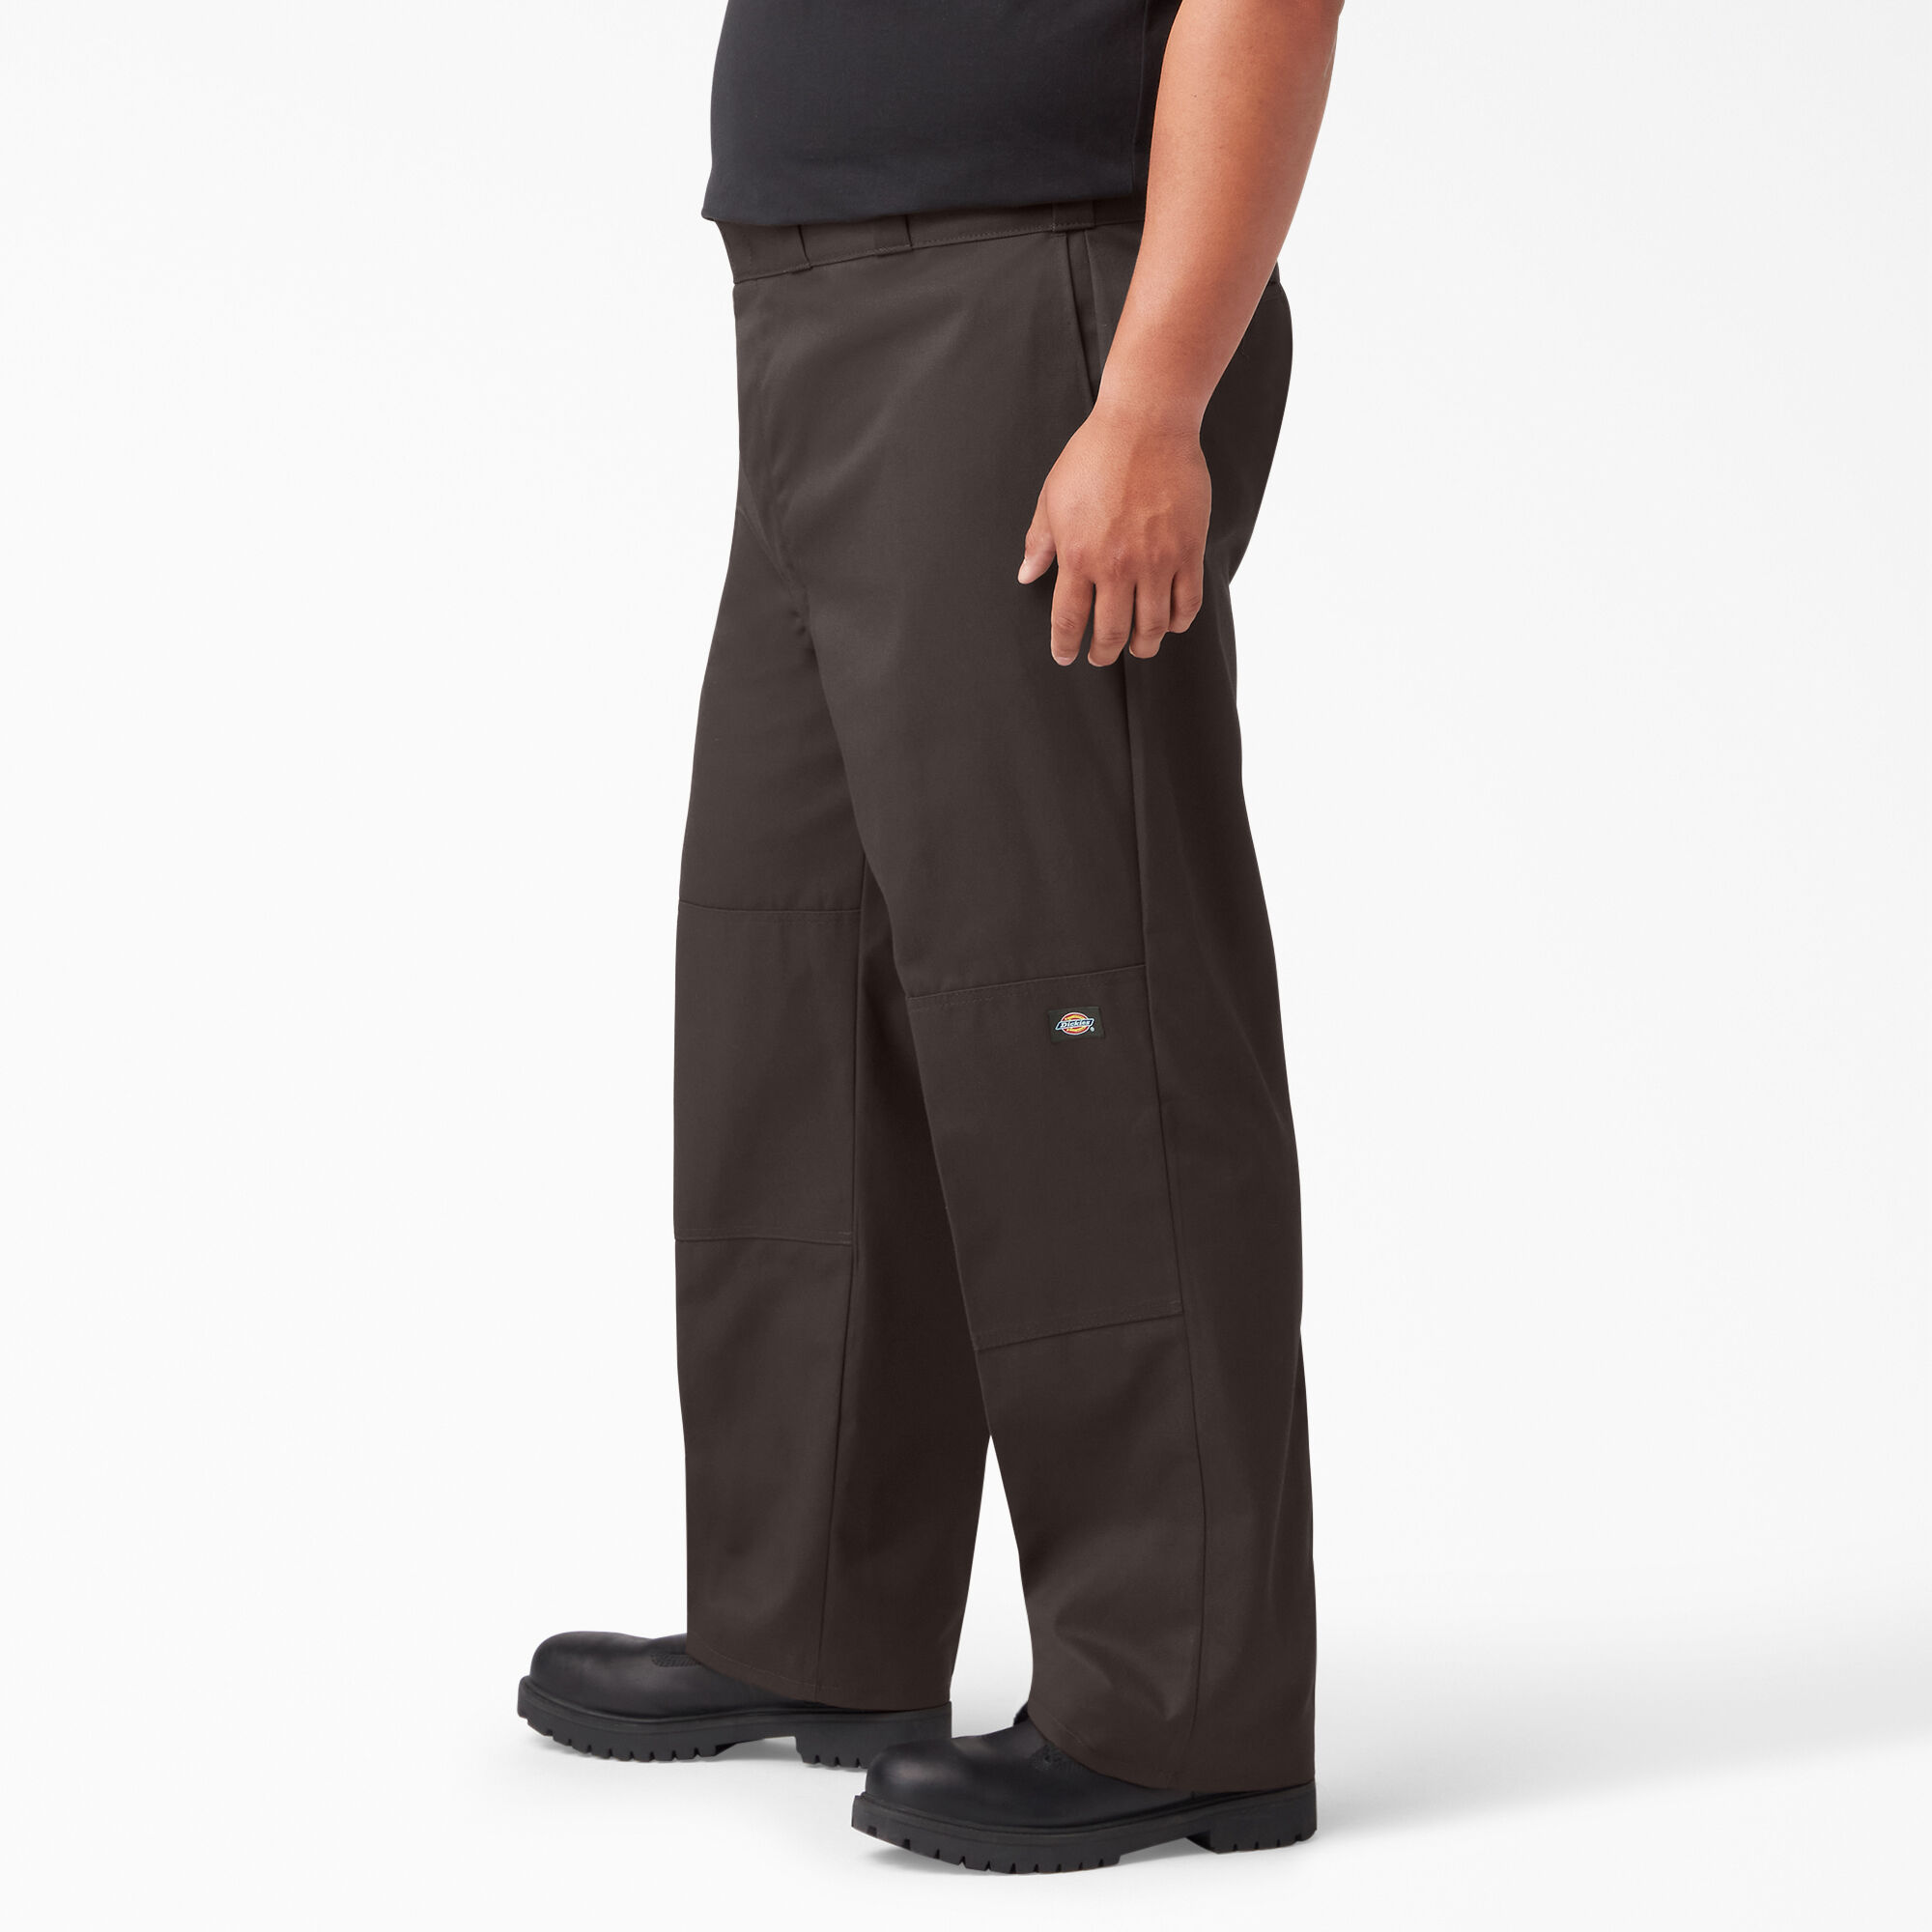 Loose Fit Double Knee Work Pants , Dark Brown | Men's Pants | Dickies